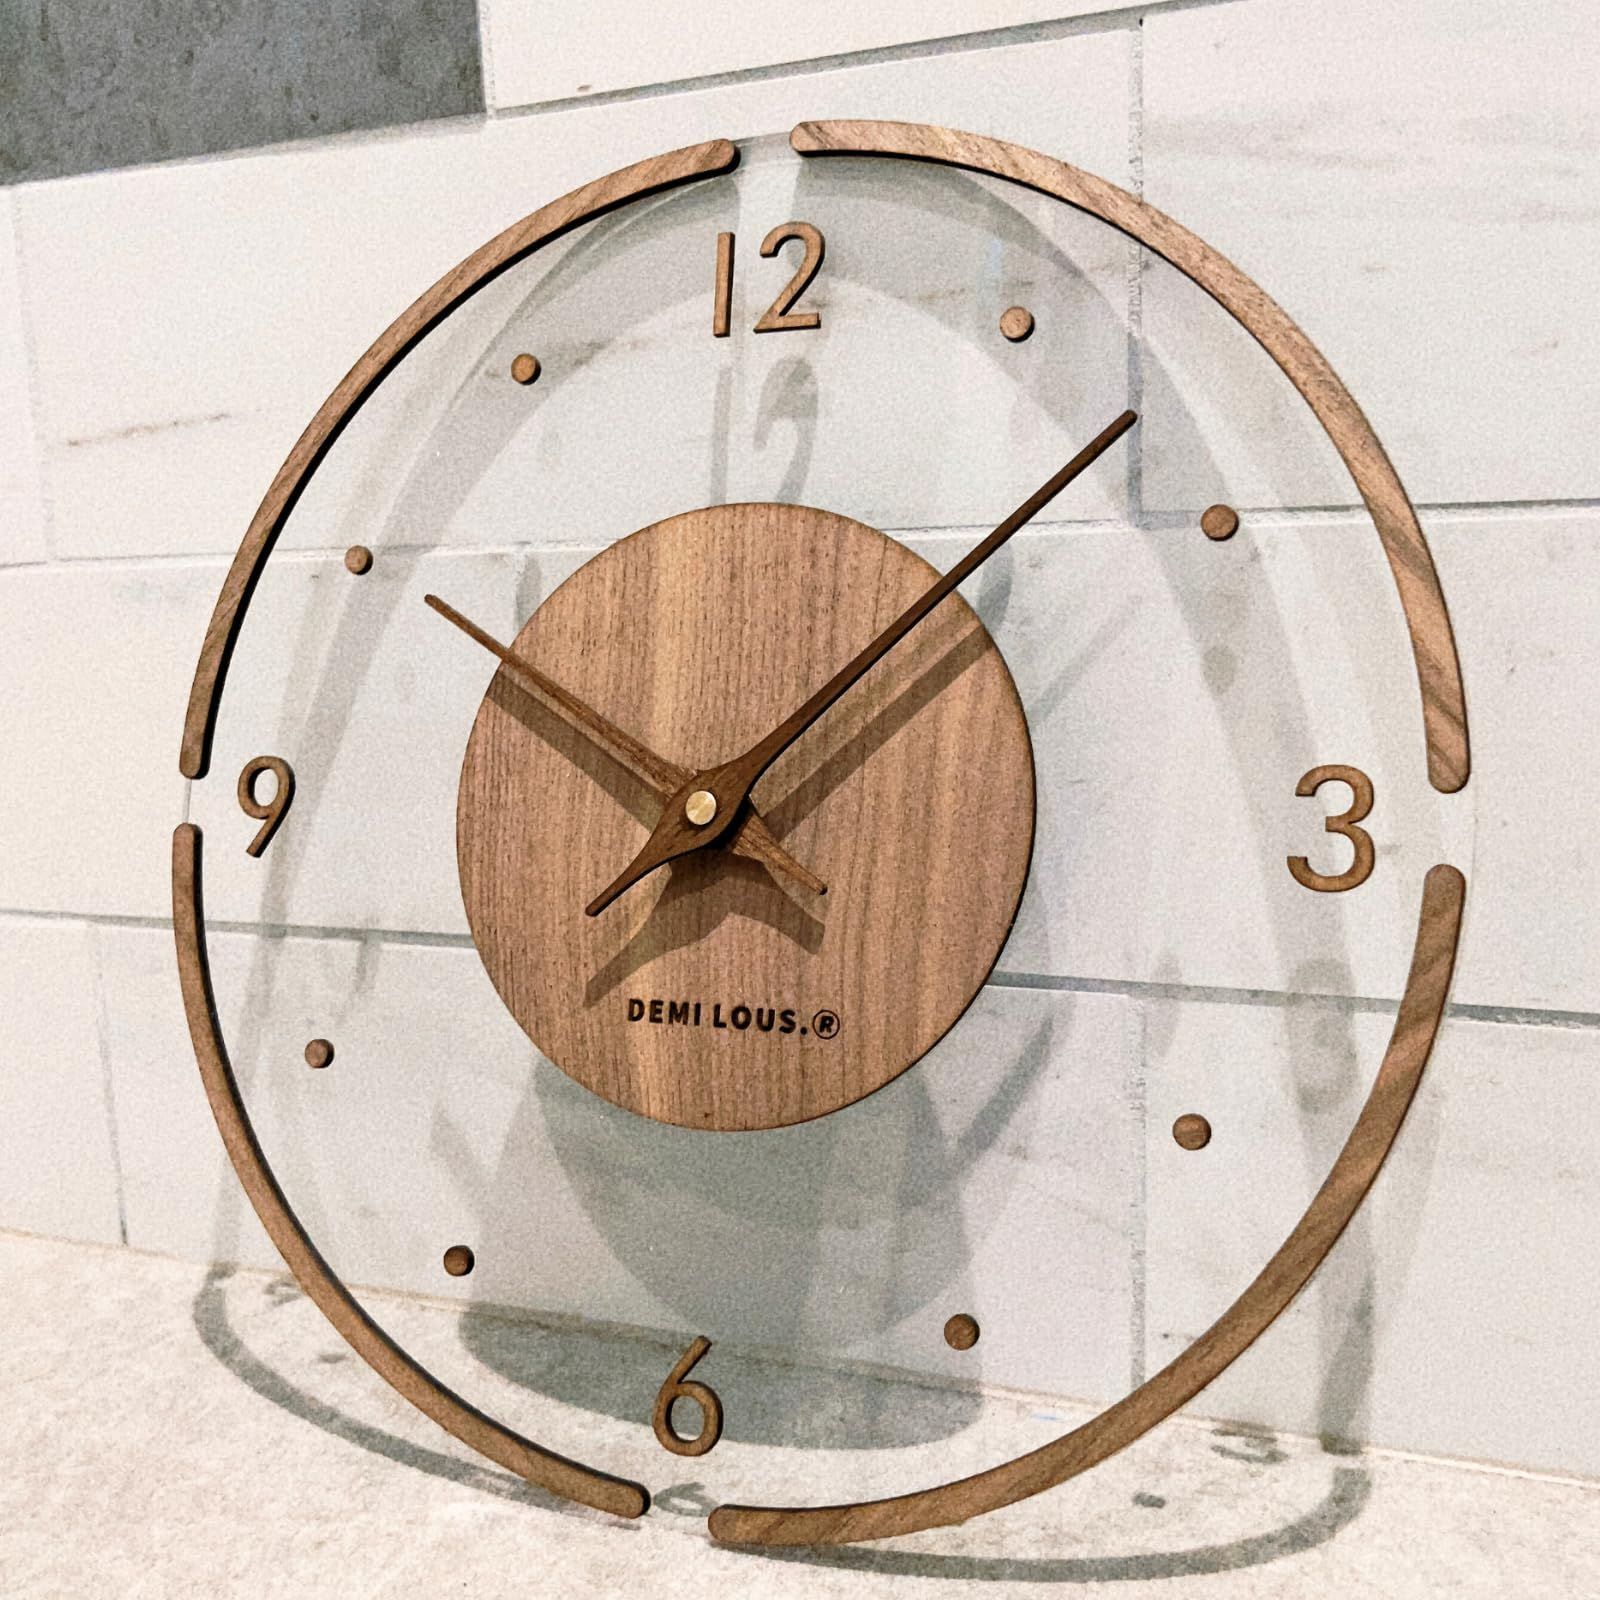 静音 シンプルデザイン デザイナーズ 手作り ナチュラル ナチュラル スタイリッシュ モダン 直径30cm ウォールナット 木製 透明 クリア  (ポップ) 掛け時計 おしゃれ 壁掛け時計 - メルカリ